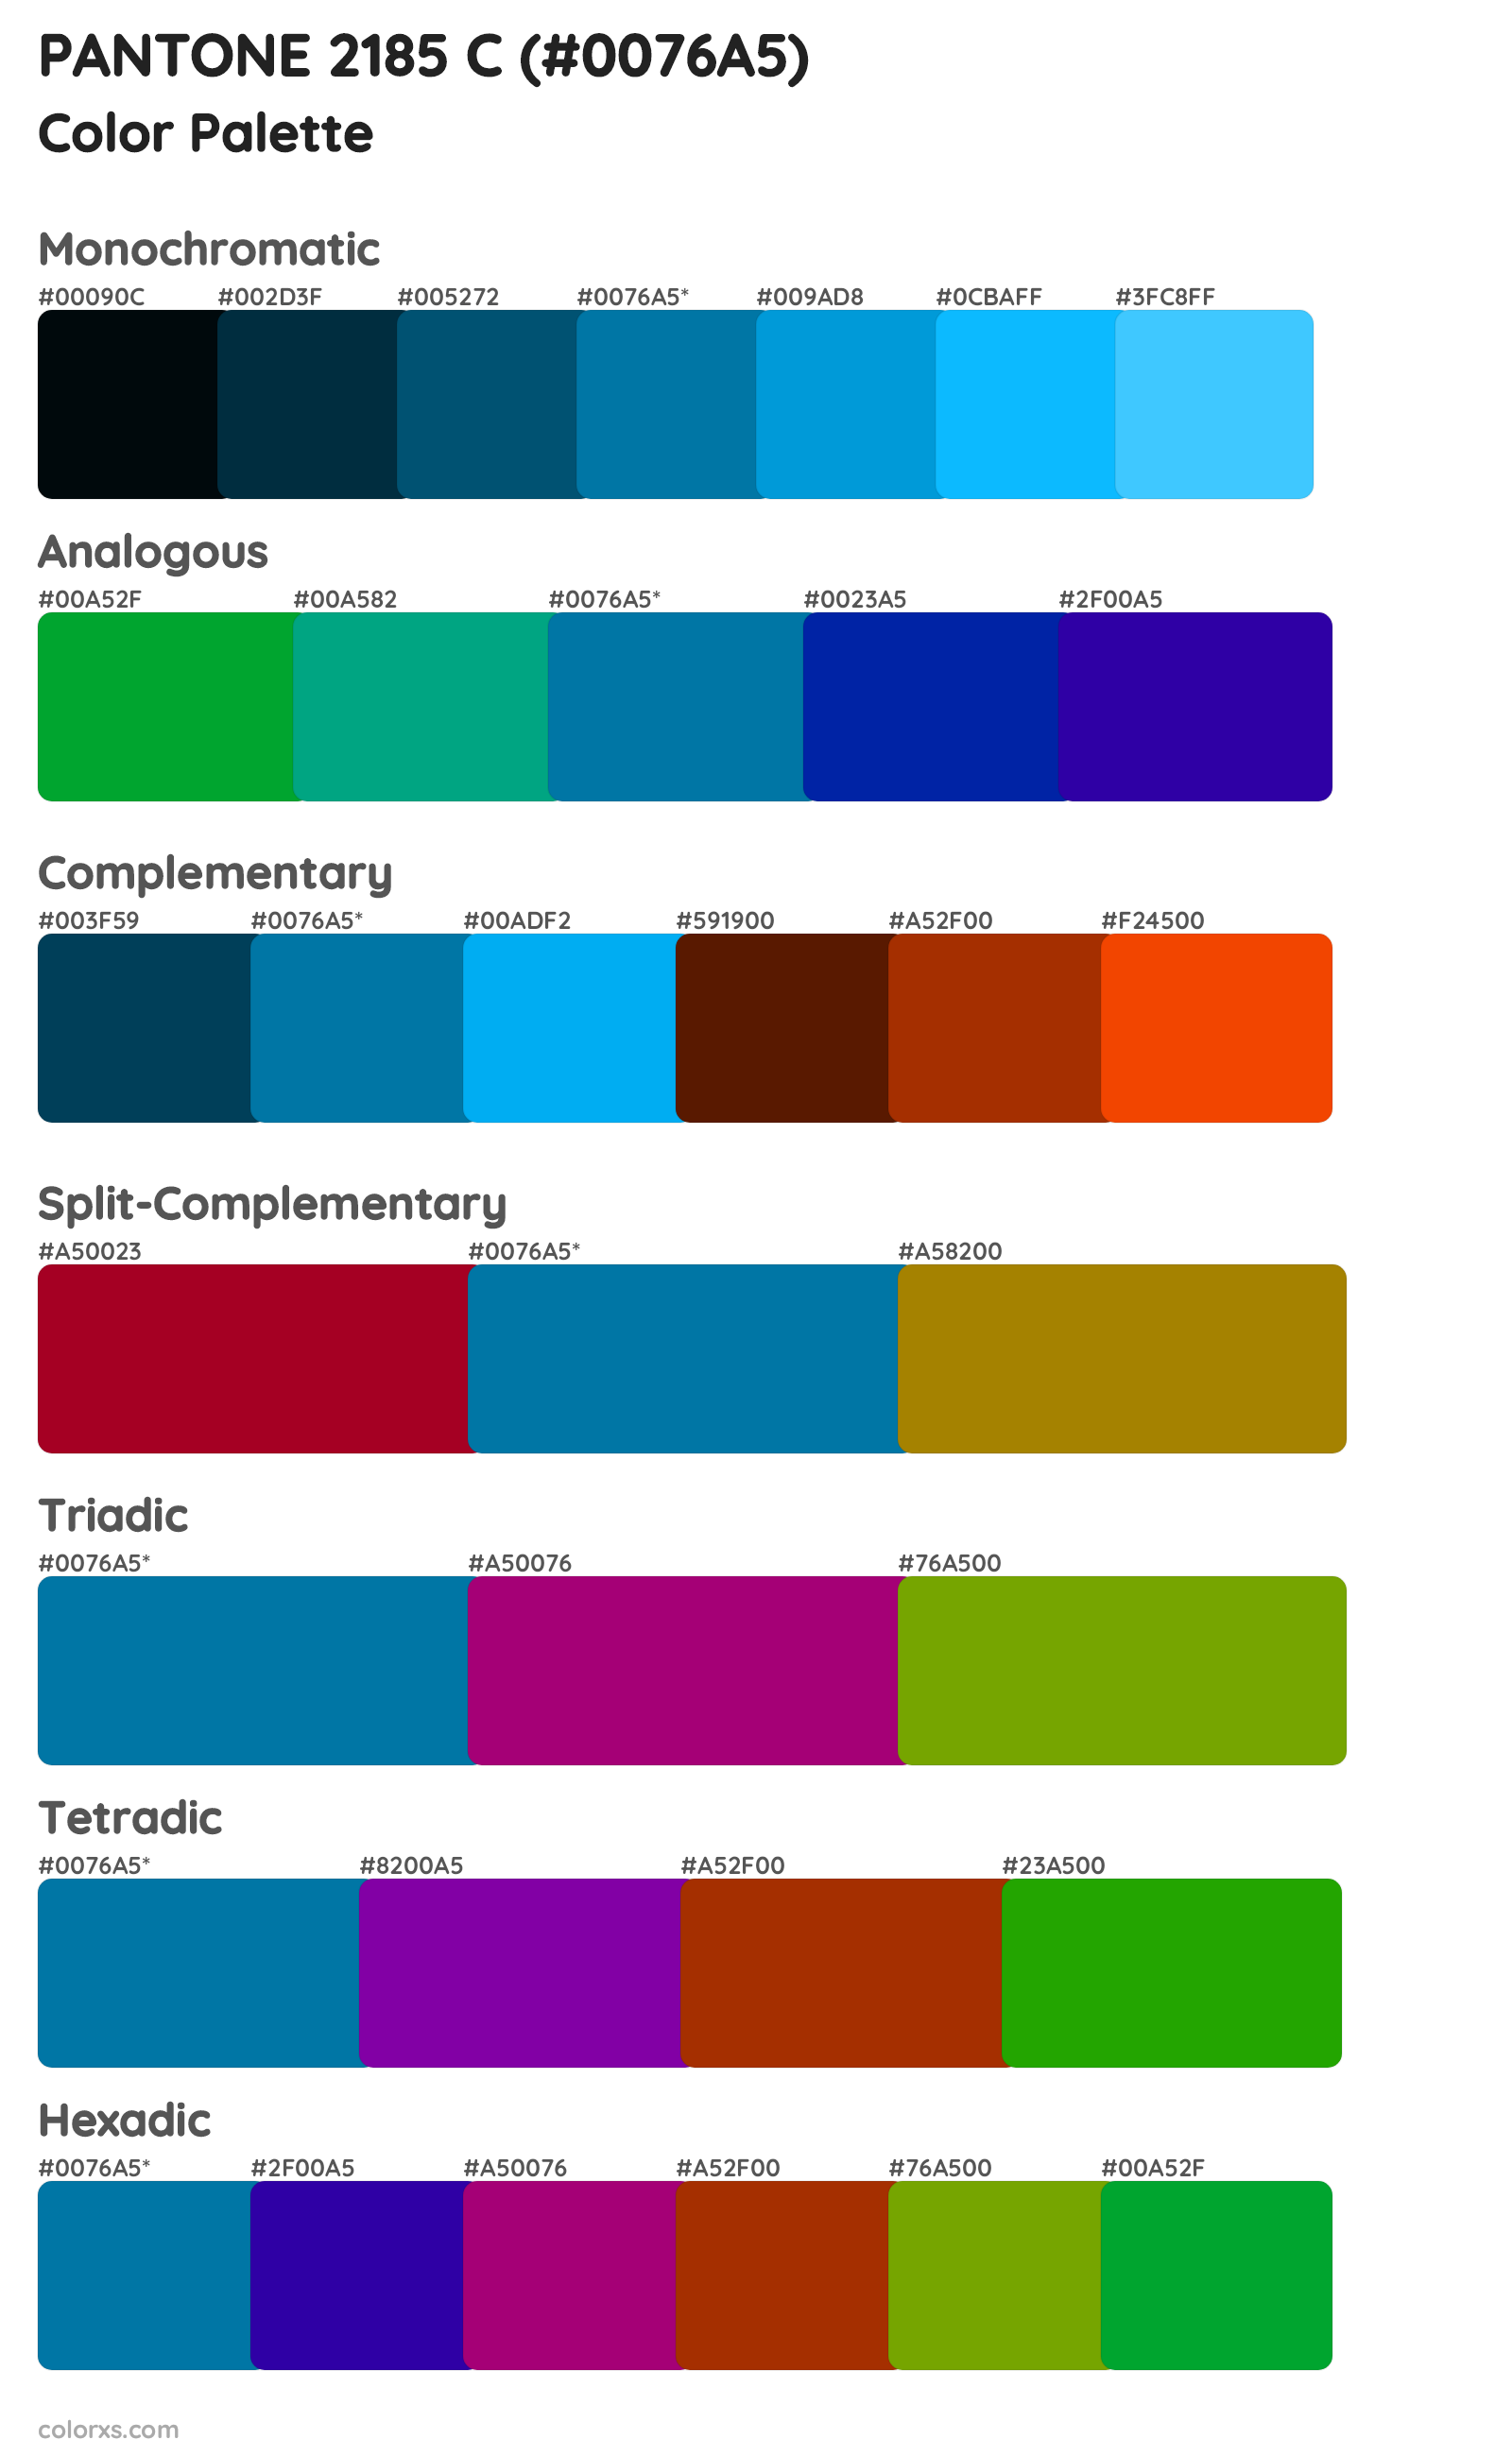 PANTONE 2185 C Color Scheme Palettes